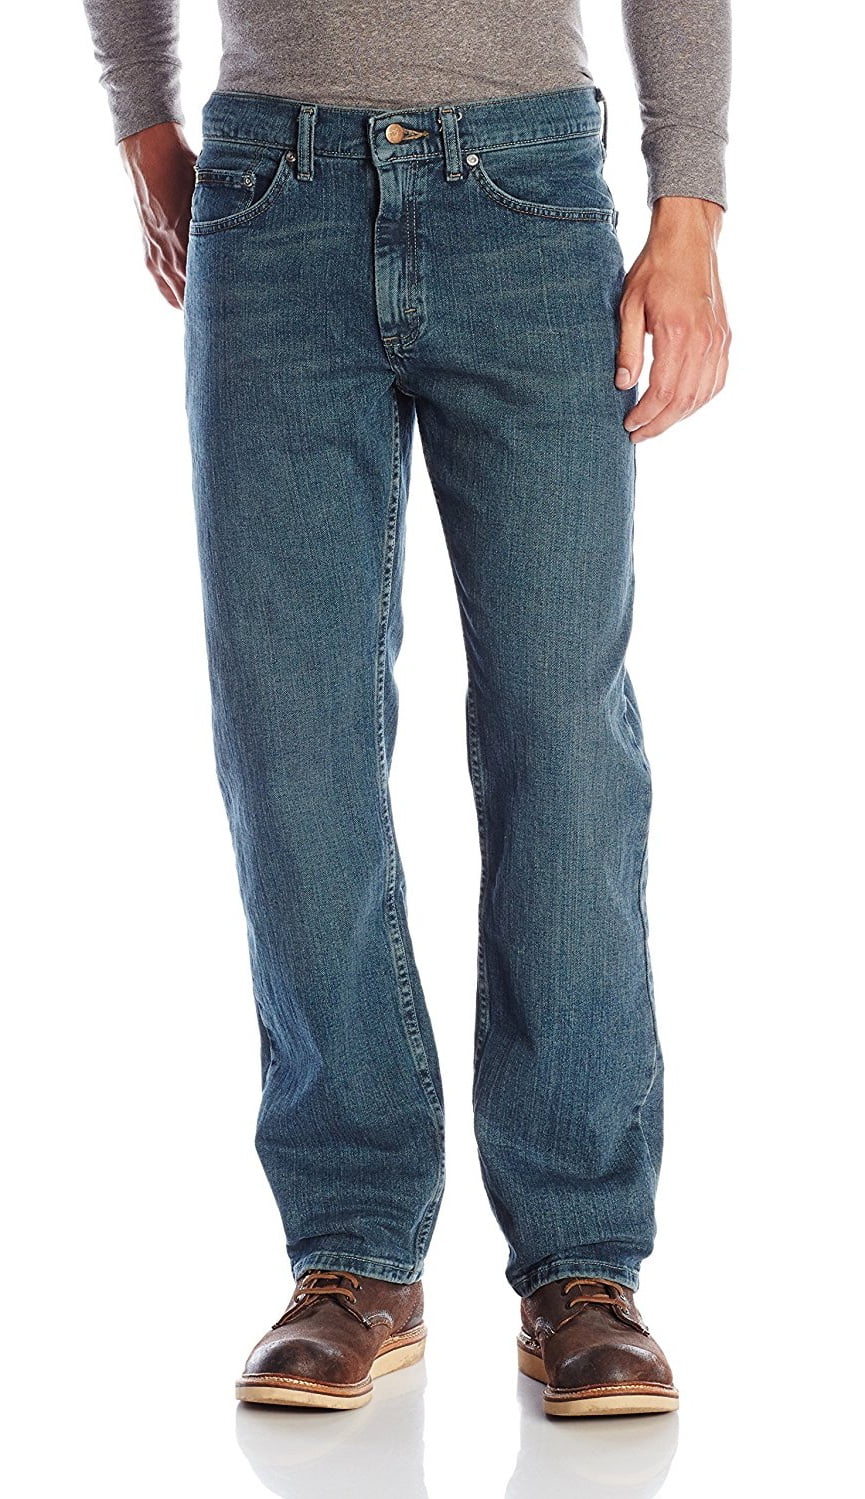 lee jeans premium select regular fit